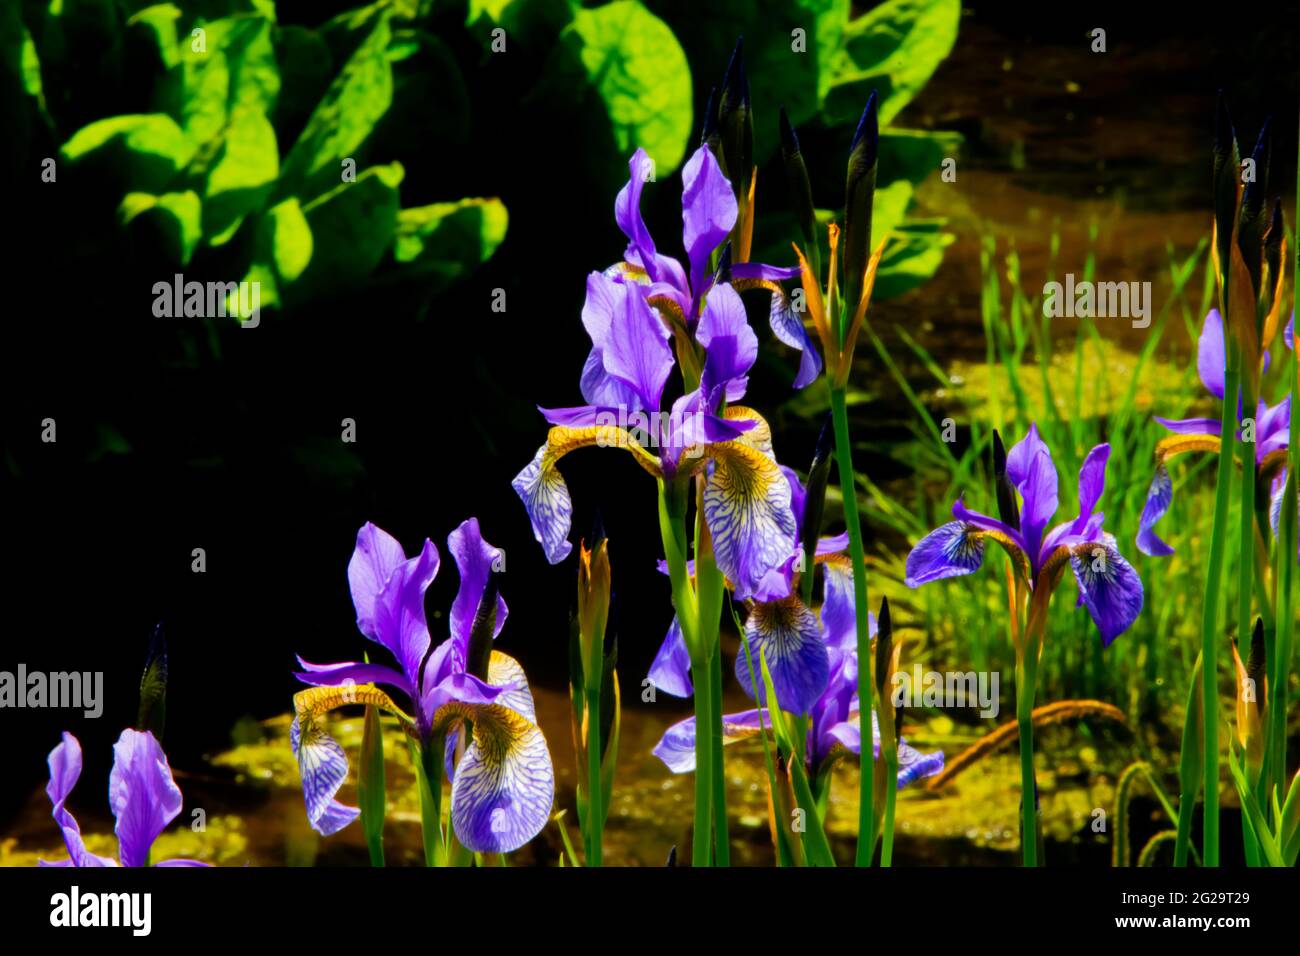 Rhizomatous herbaceous perennial, Siberian Irises or Iris sibirica flower in the gardens at the Crichton, Dumfries, Scotland Stock Photo